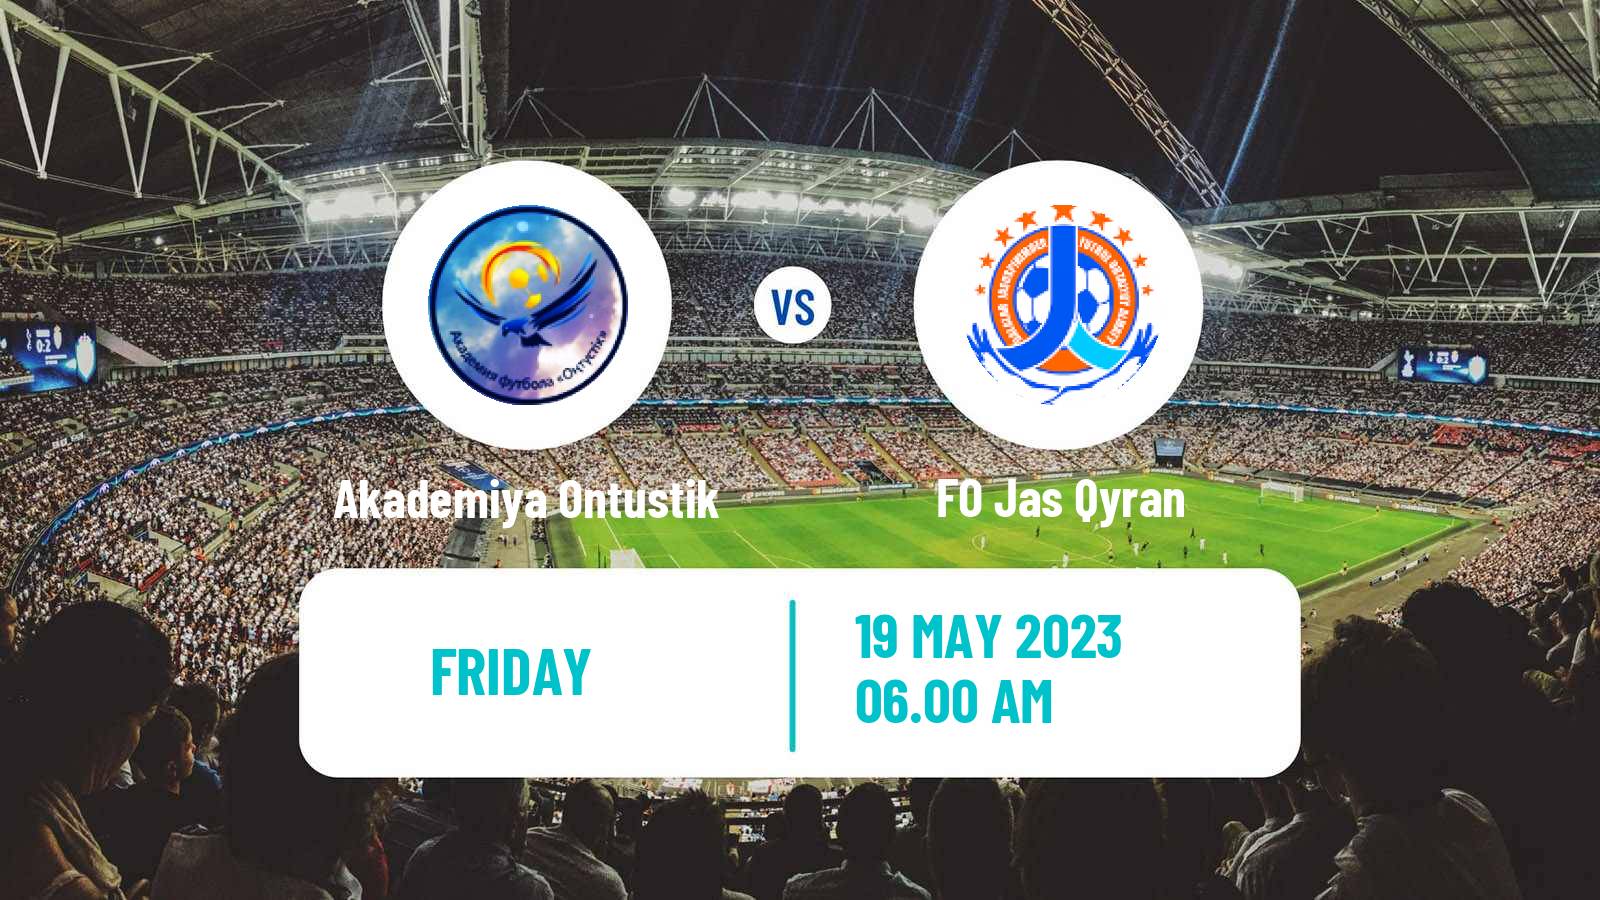 Soccer Kazakh First Division Akademiya Ontustik - Jas Qyran